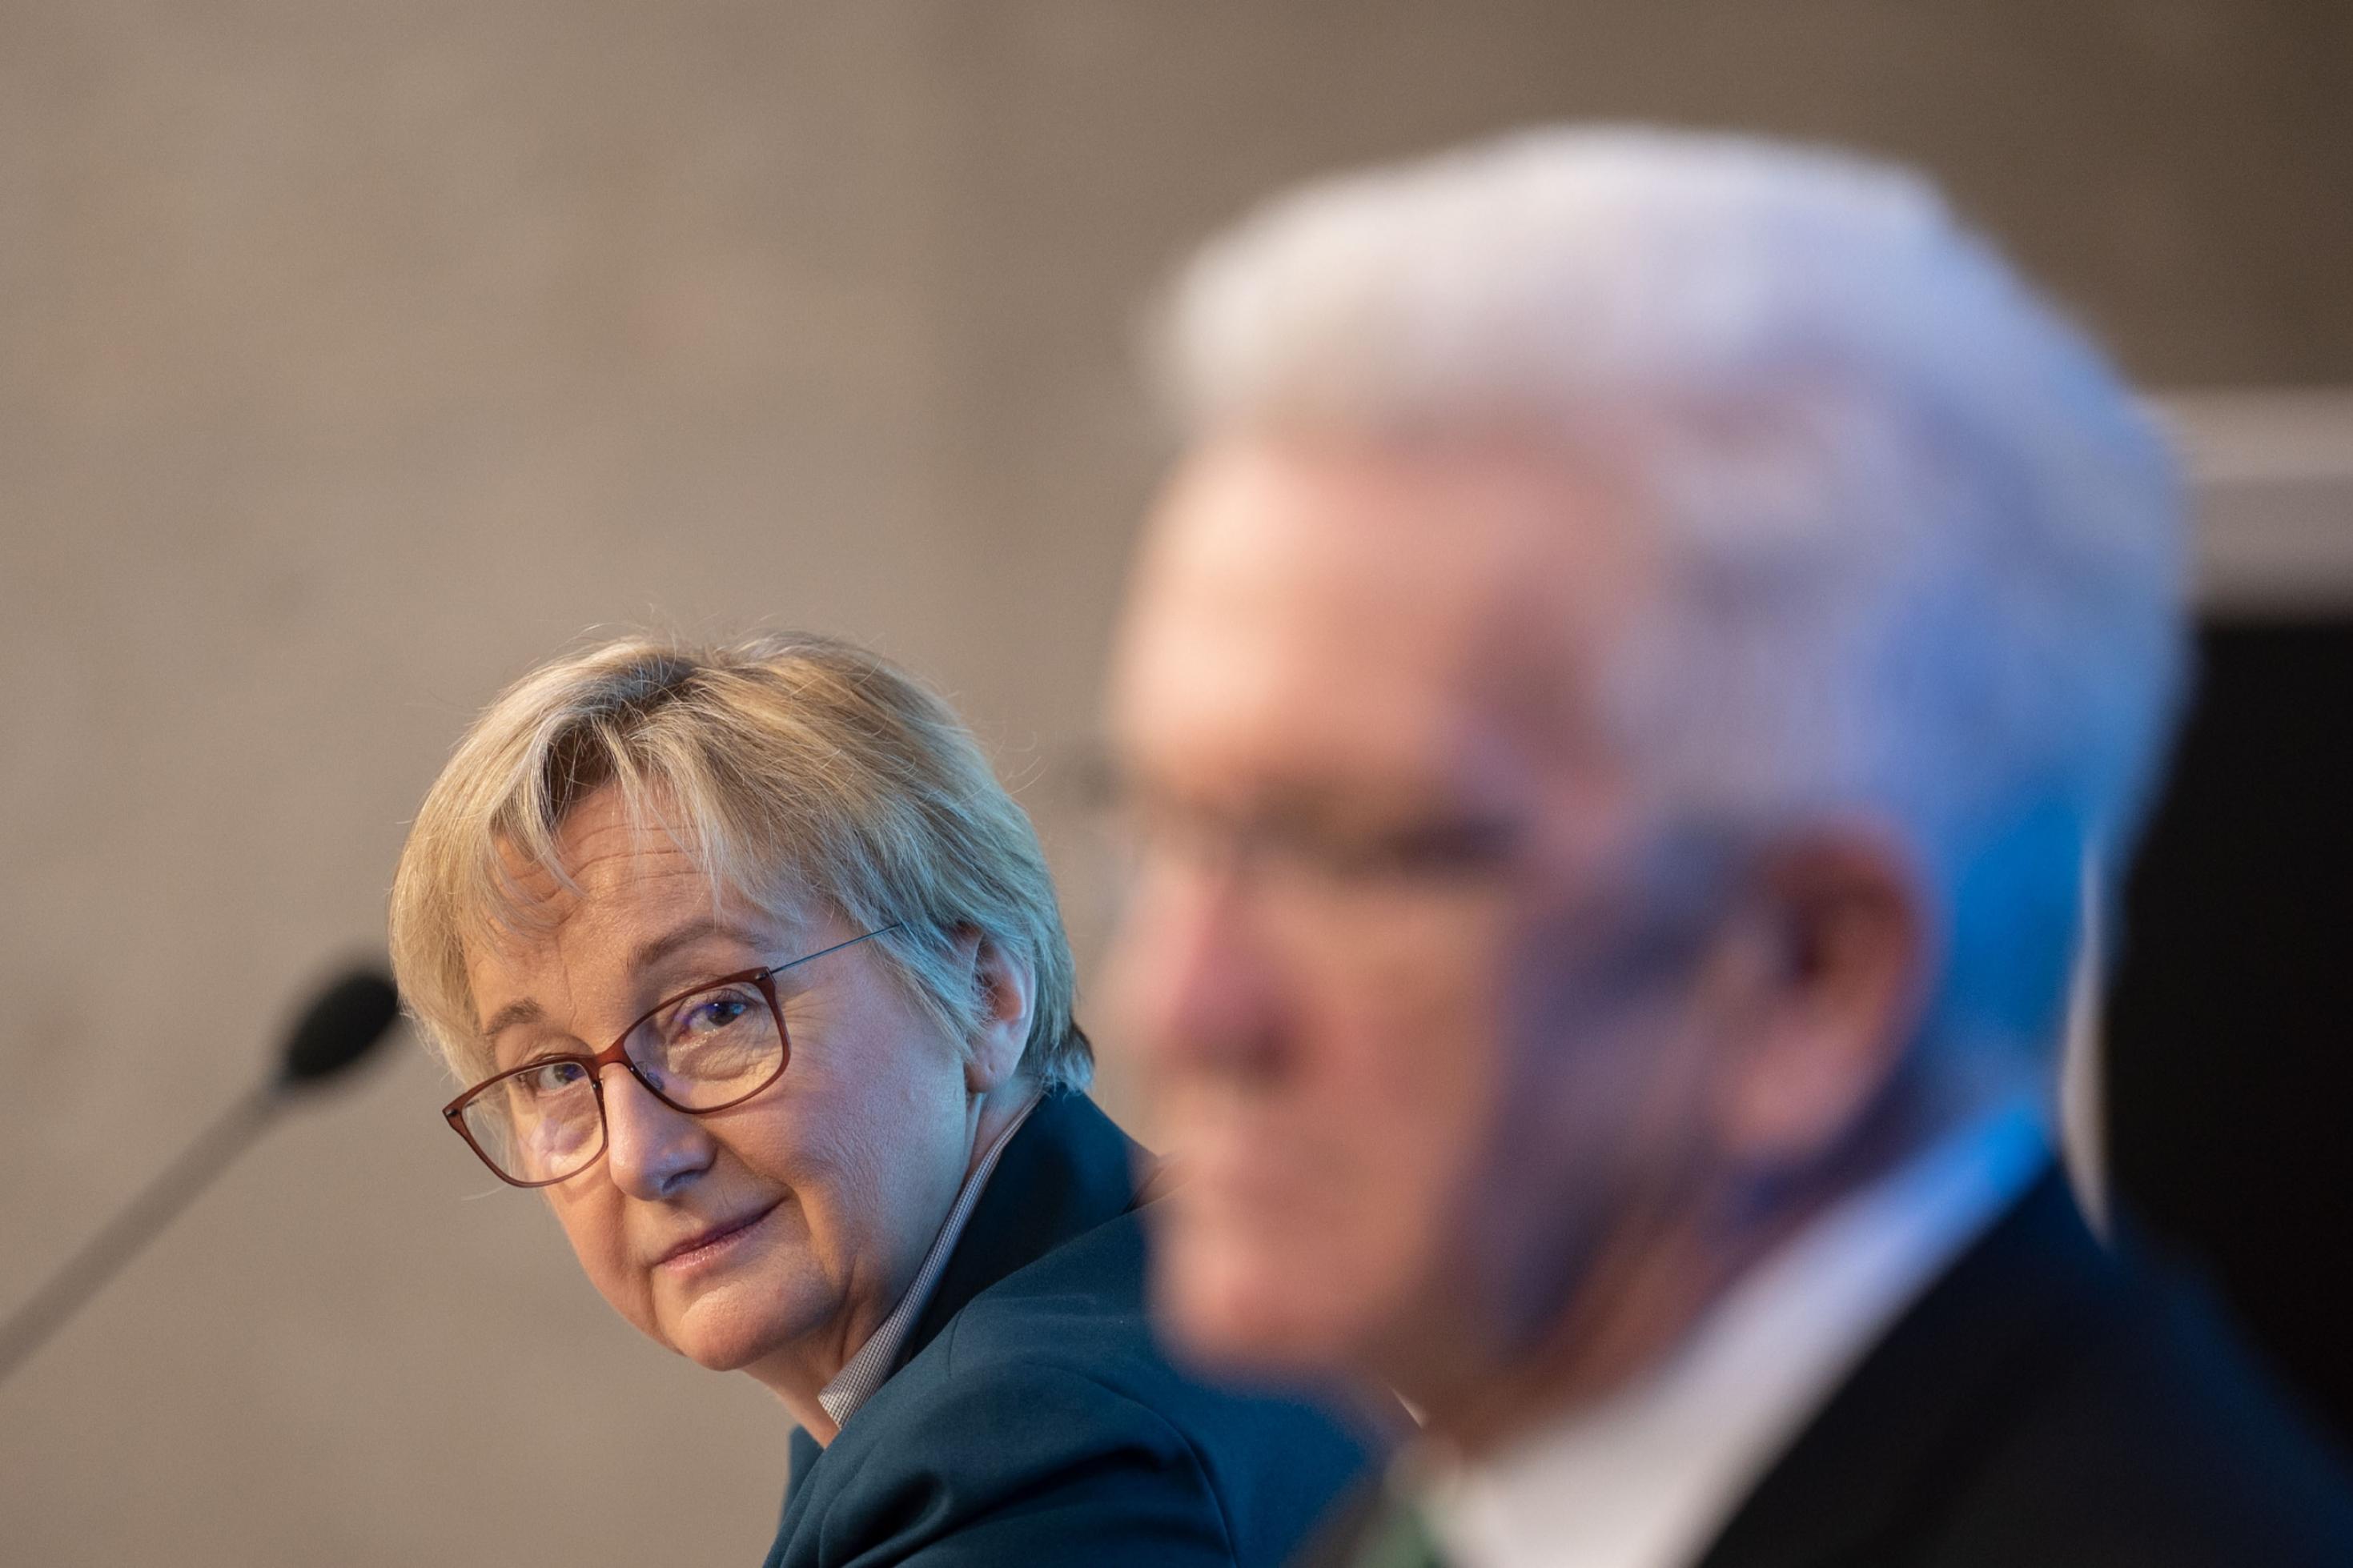 Wissenschaftsministerin Theresia Bauer, eine mittelalte Frau, blond, mit Brille lächelt verschmitzt Winfried Kretschmann zu. Kretschmann ist Ministerpräsident von Baden-Württemberg. Er ist unscharf nur im Profil zu sehen.